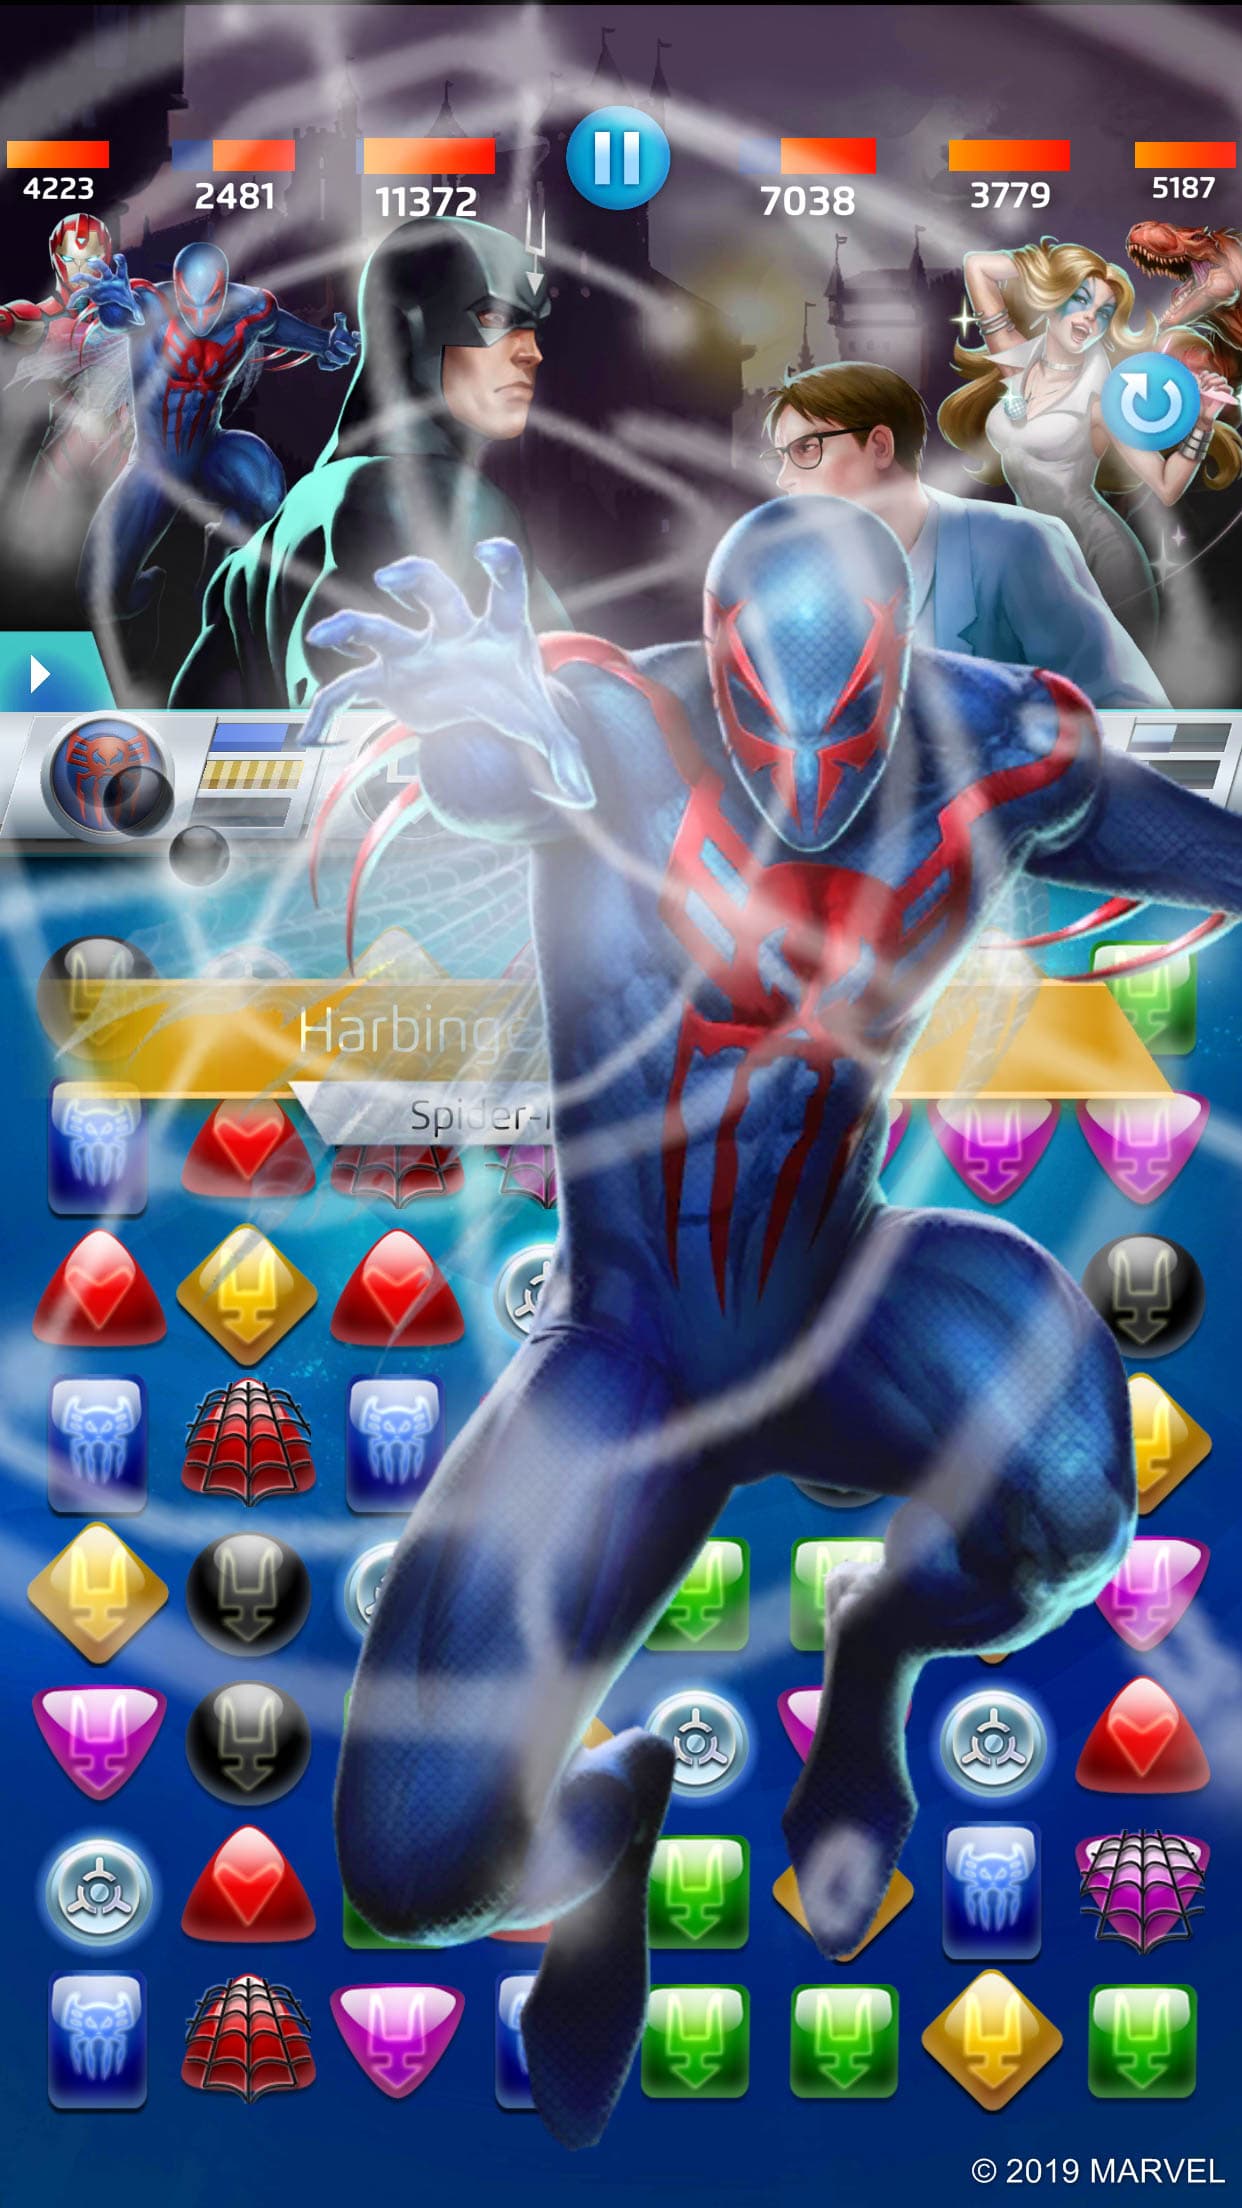 Spider-Man 2099 heroes